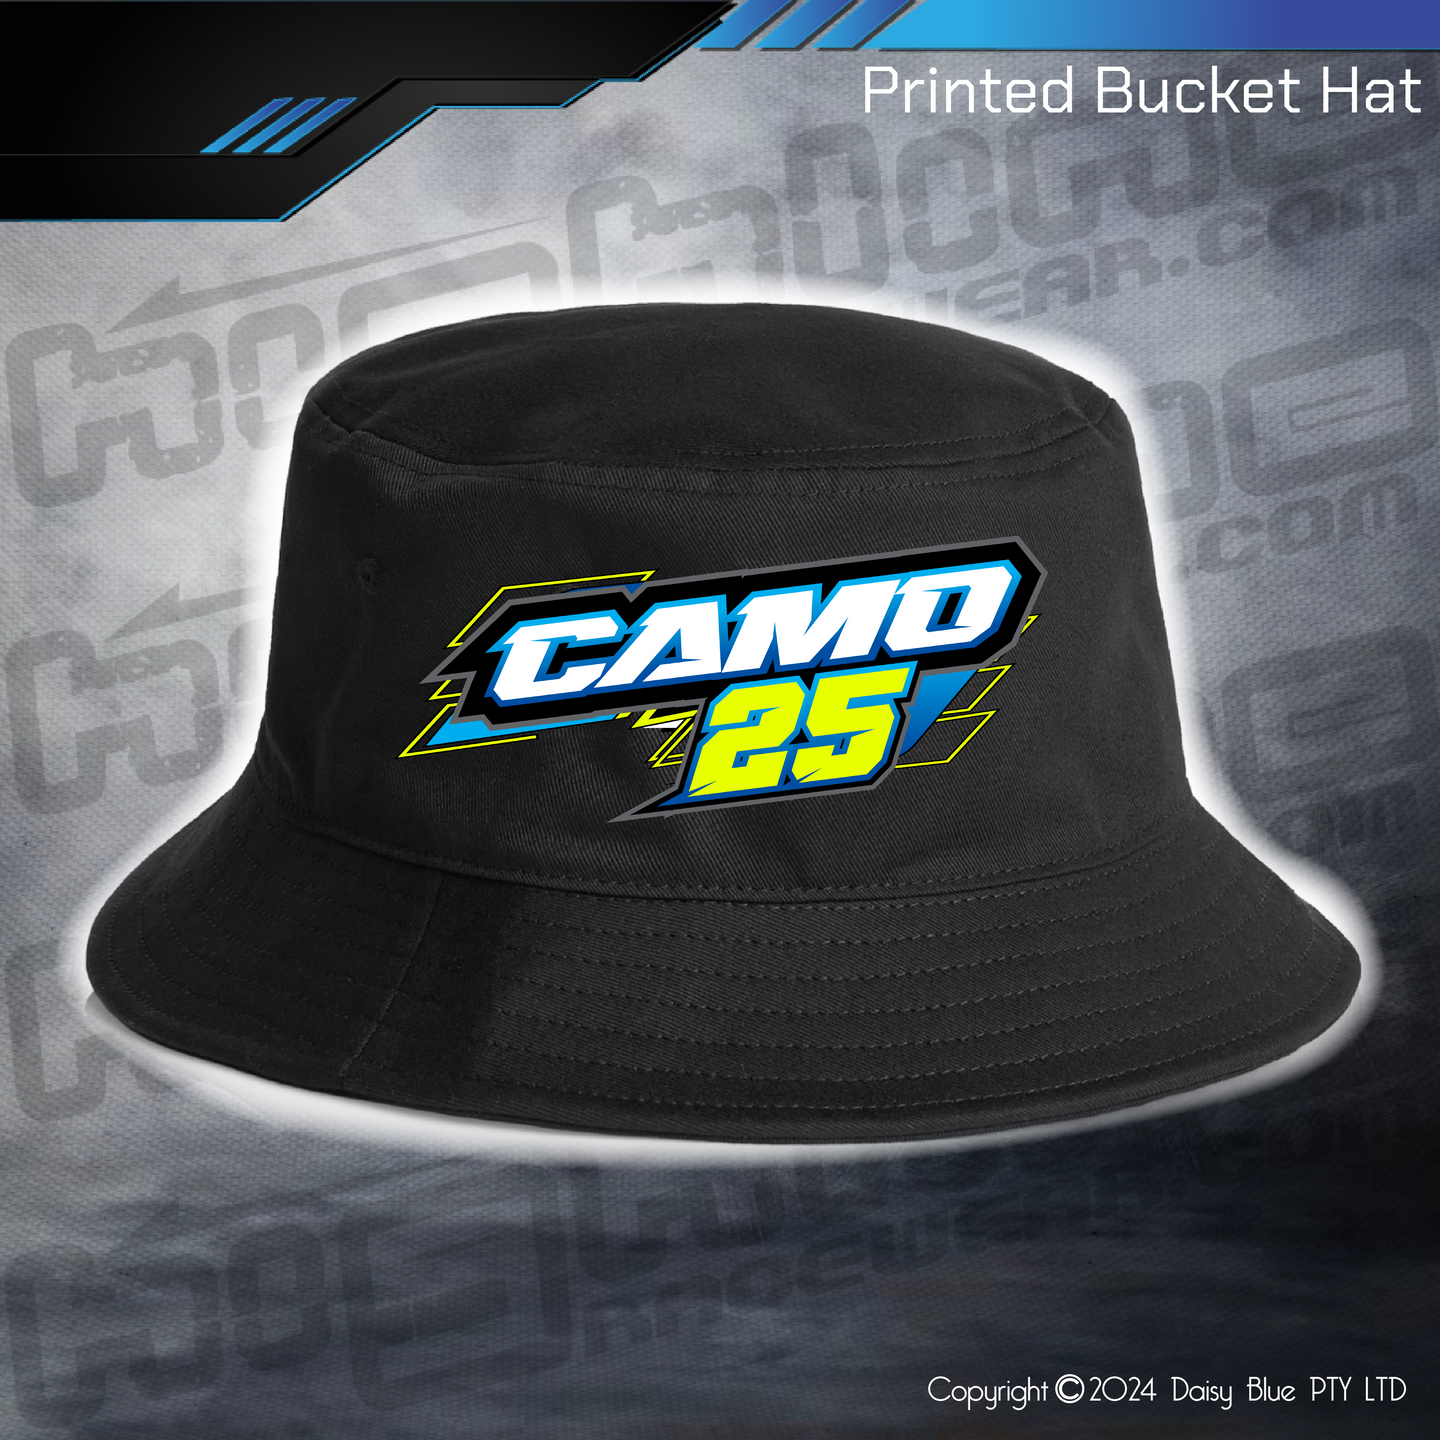 Printed Bucket Hat - Cameron Dike